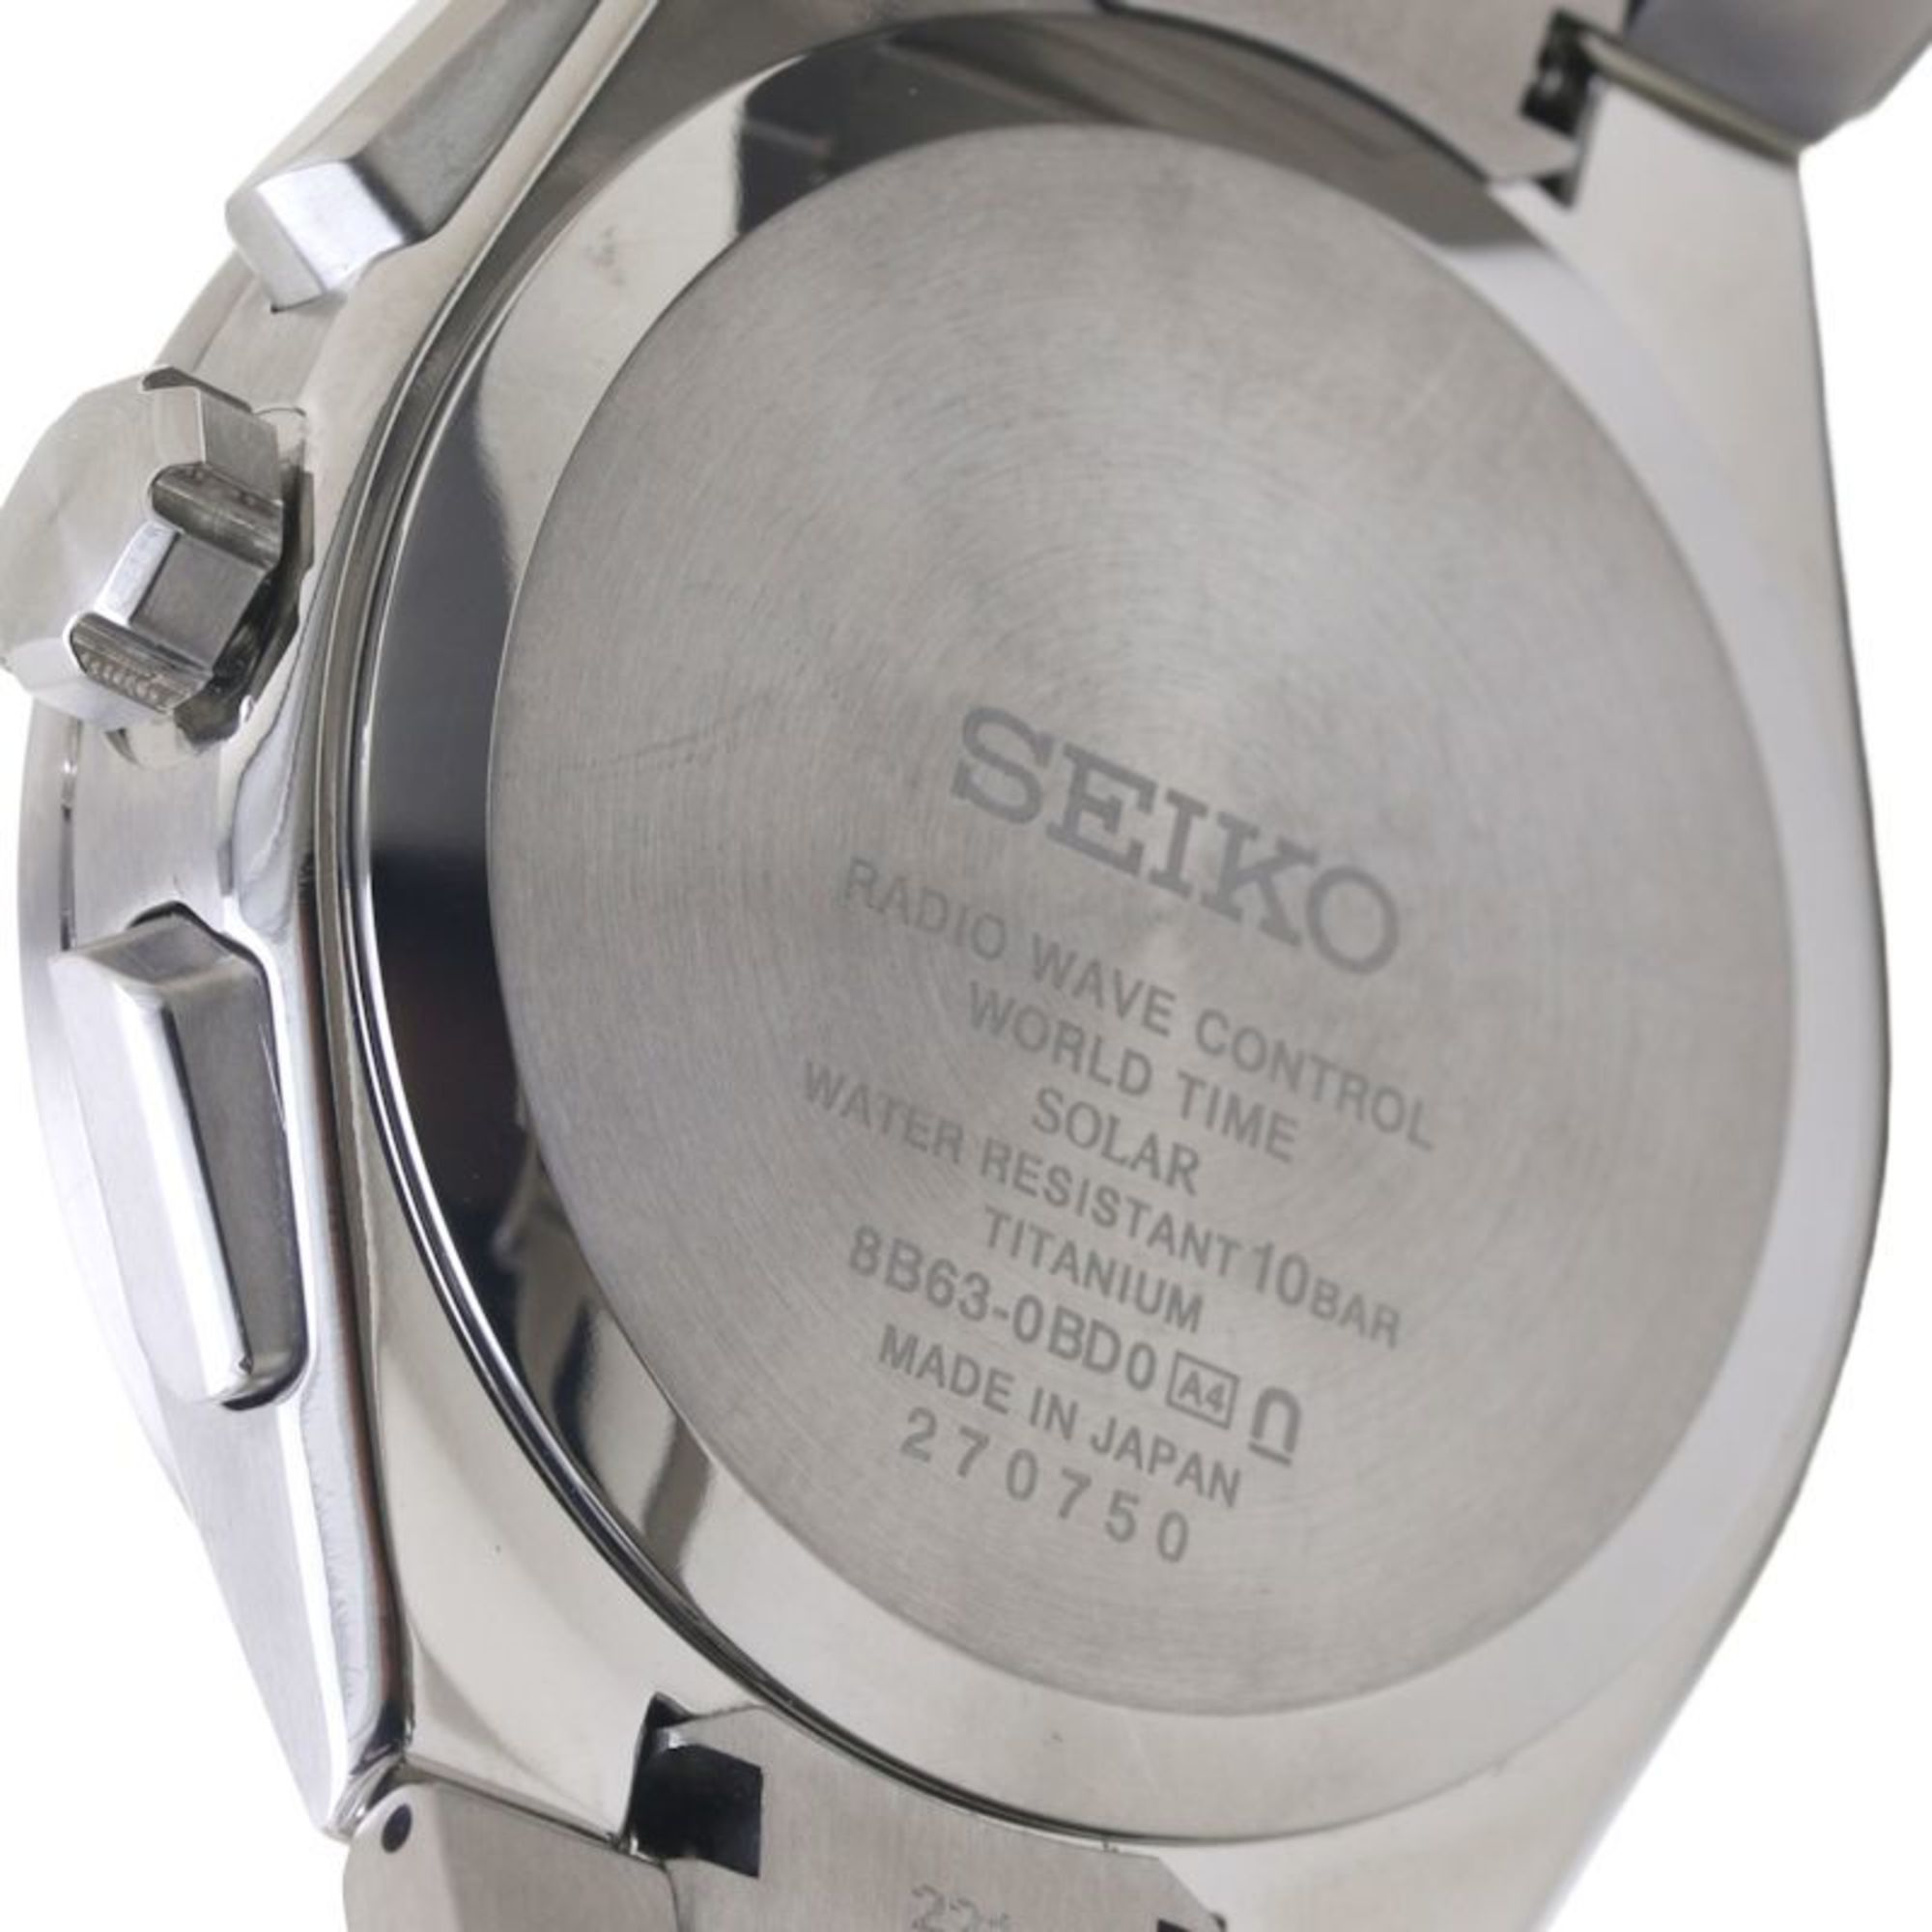 SEIKO Astron Nexstar SBXY053 8B63−0BD0 Titanium Men's 130016